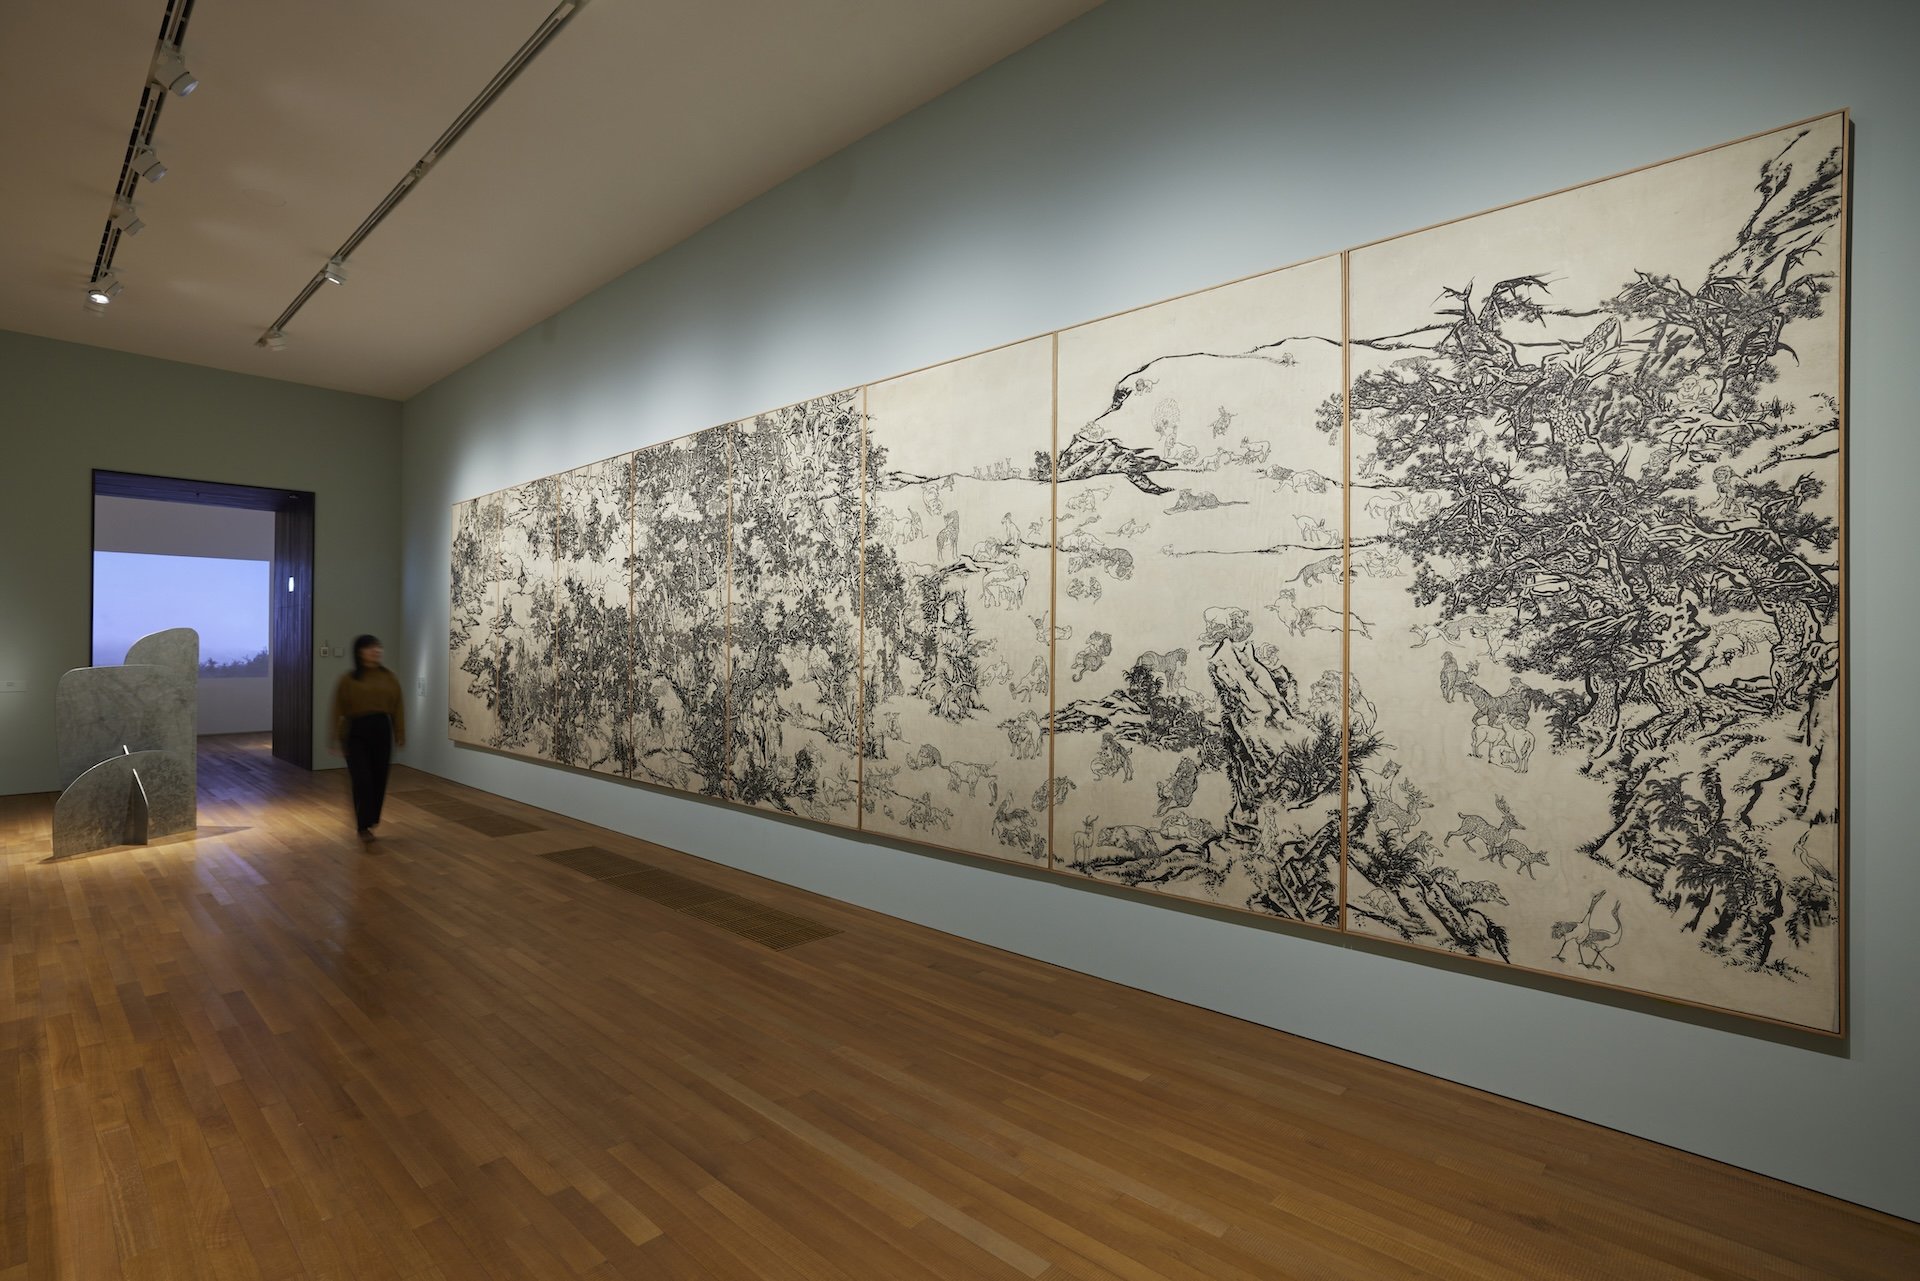 展厅配以灰墙和木地板，墙上挂着一幅由多块画板组成的巨型黑白水墨画。画作描绘人类和动物在大石和树木之间或休息、或互动，他们大多成双成对，姿态各异。